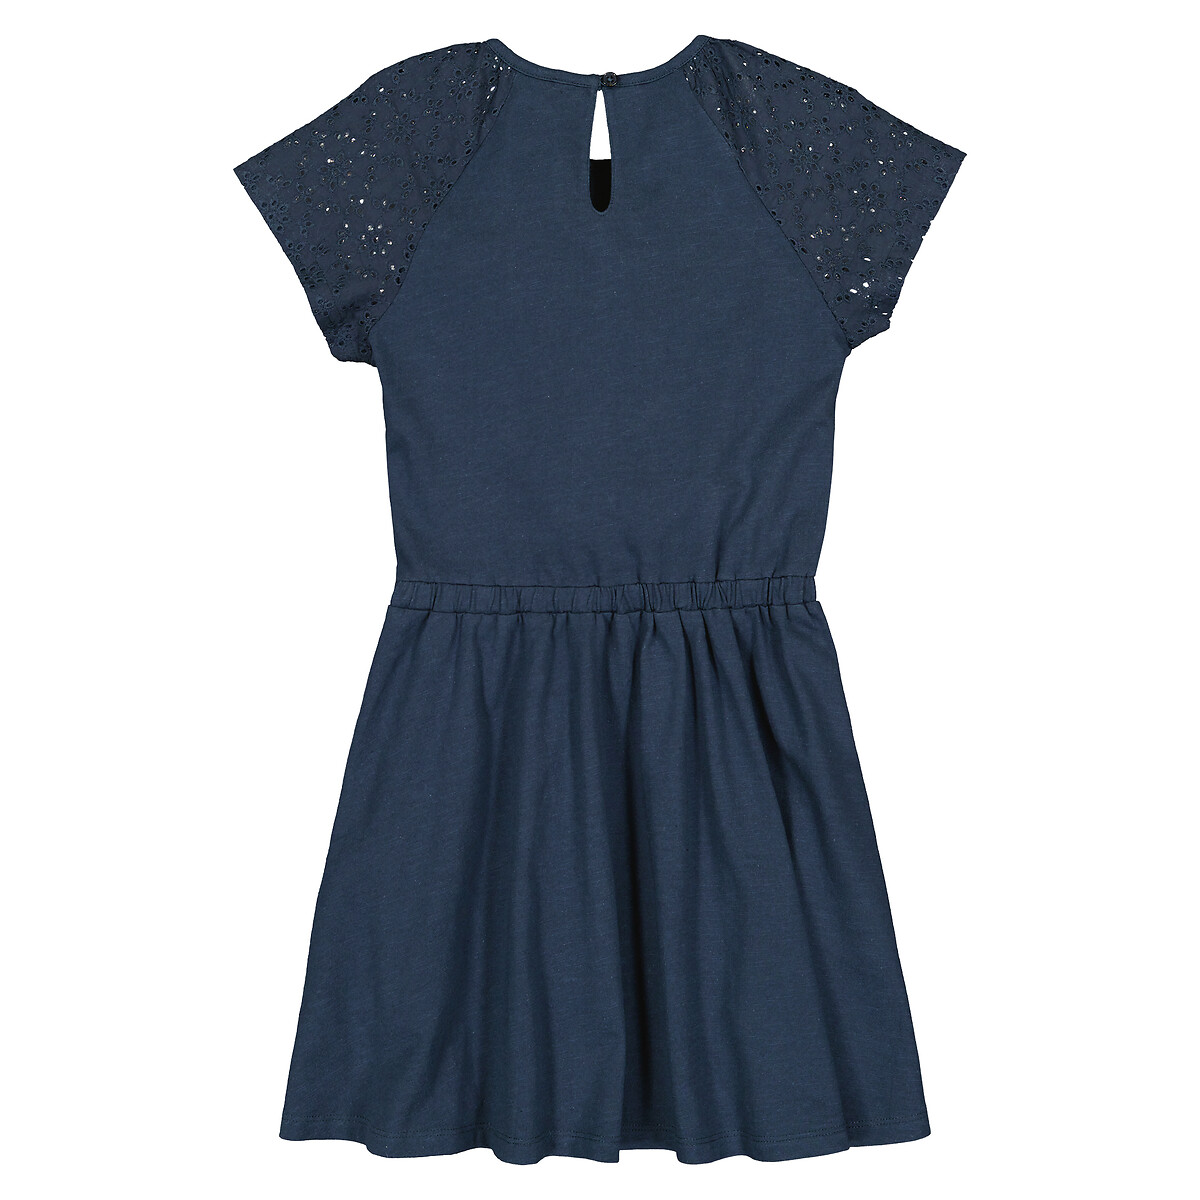 Платье С короткими рукавами английская вышивка спереди 9 лет - 132 см синий LaRedoute, размер 9 лет - 132 см - фото 4